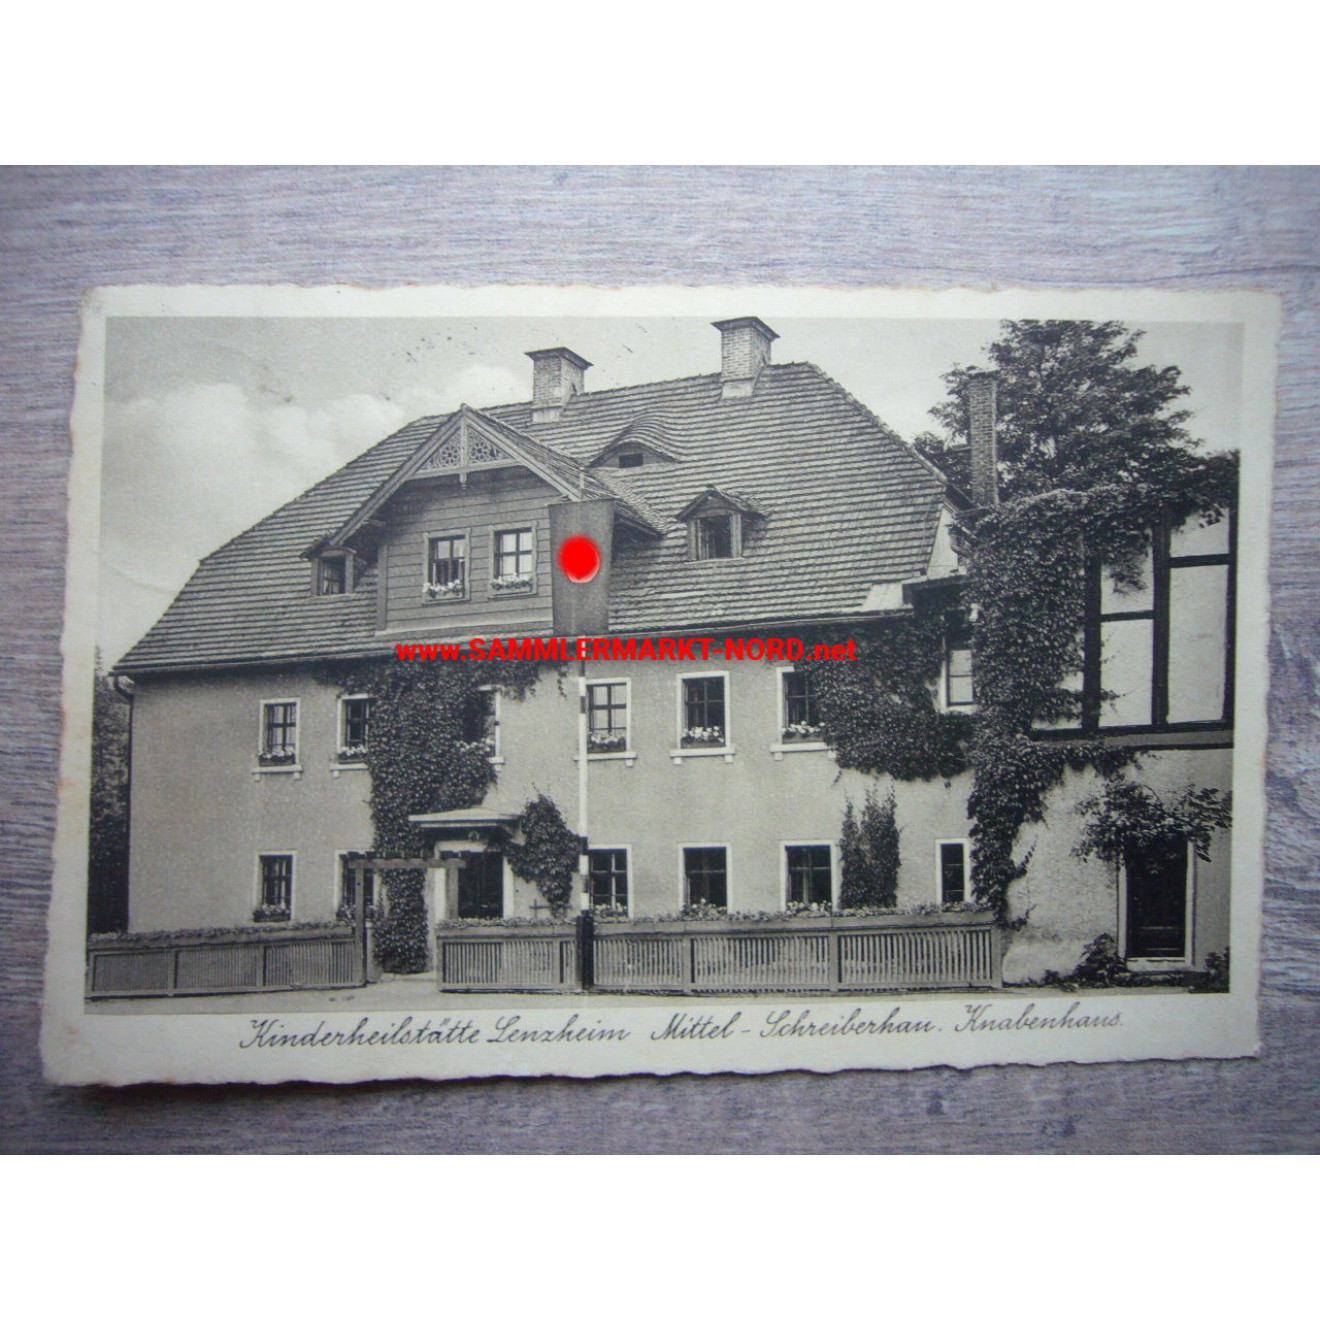 Kinderheilstätte Lenzheim, Mittel-Schreiberhau mit Hakenkreuz Fahne - Postkarte